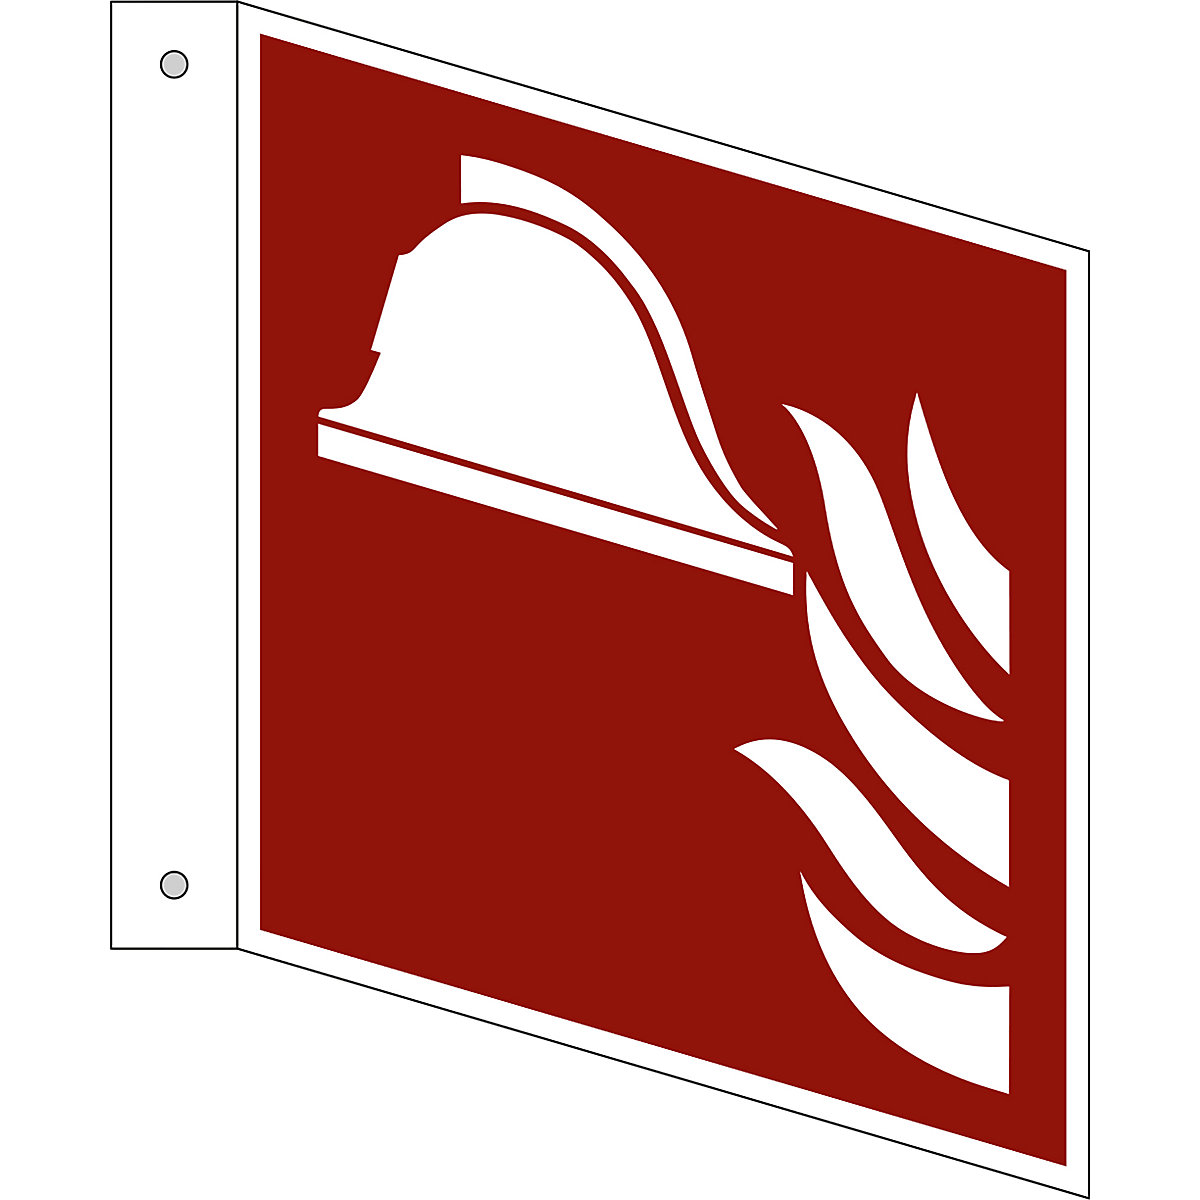 Značka pro ochranu proti požáru, prostředky a přístroje pro hašení požáru, bal.j. 10 ks, hliník, vlajkový štítek, 150 x 150 mm